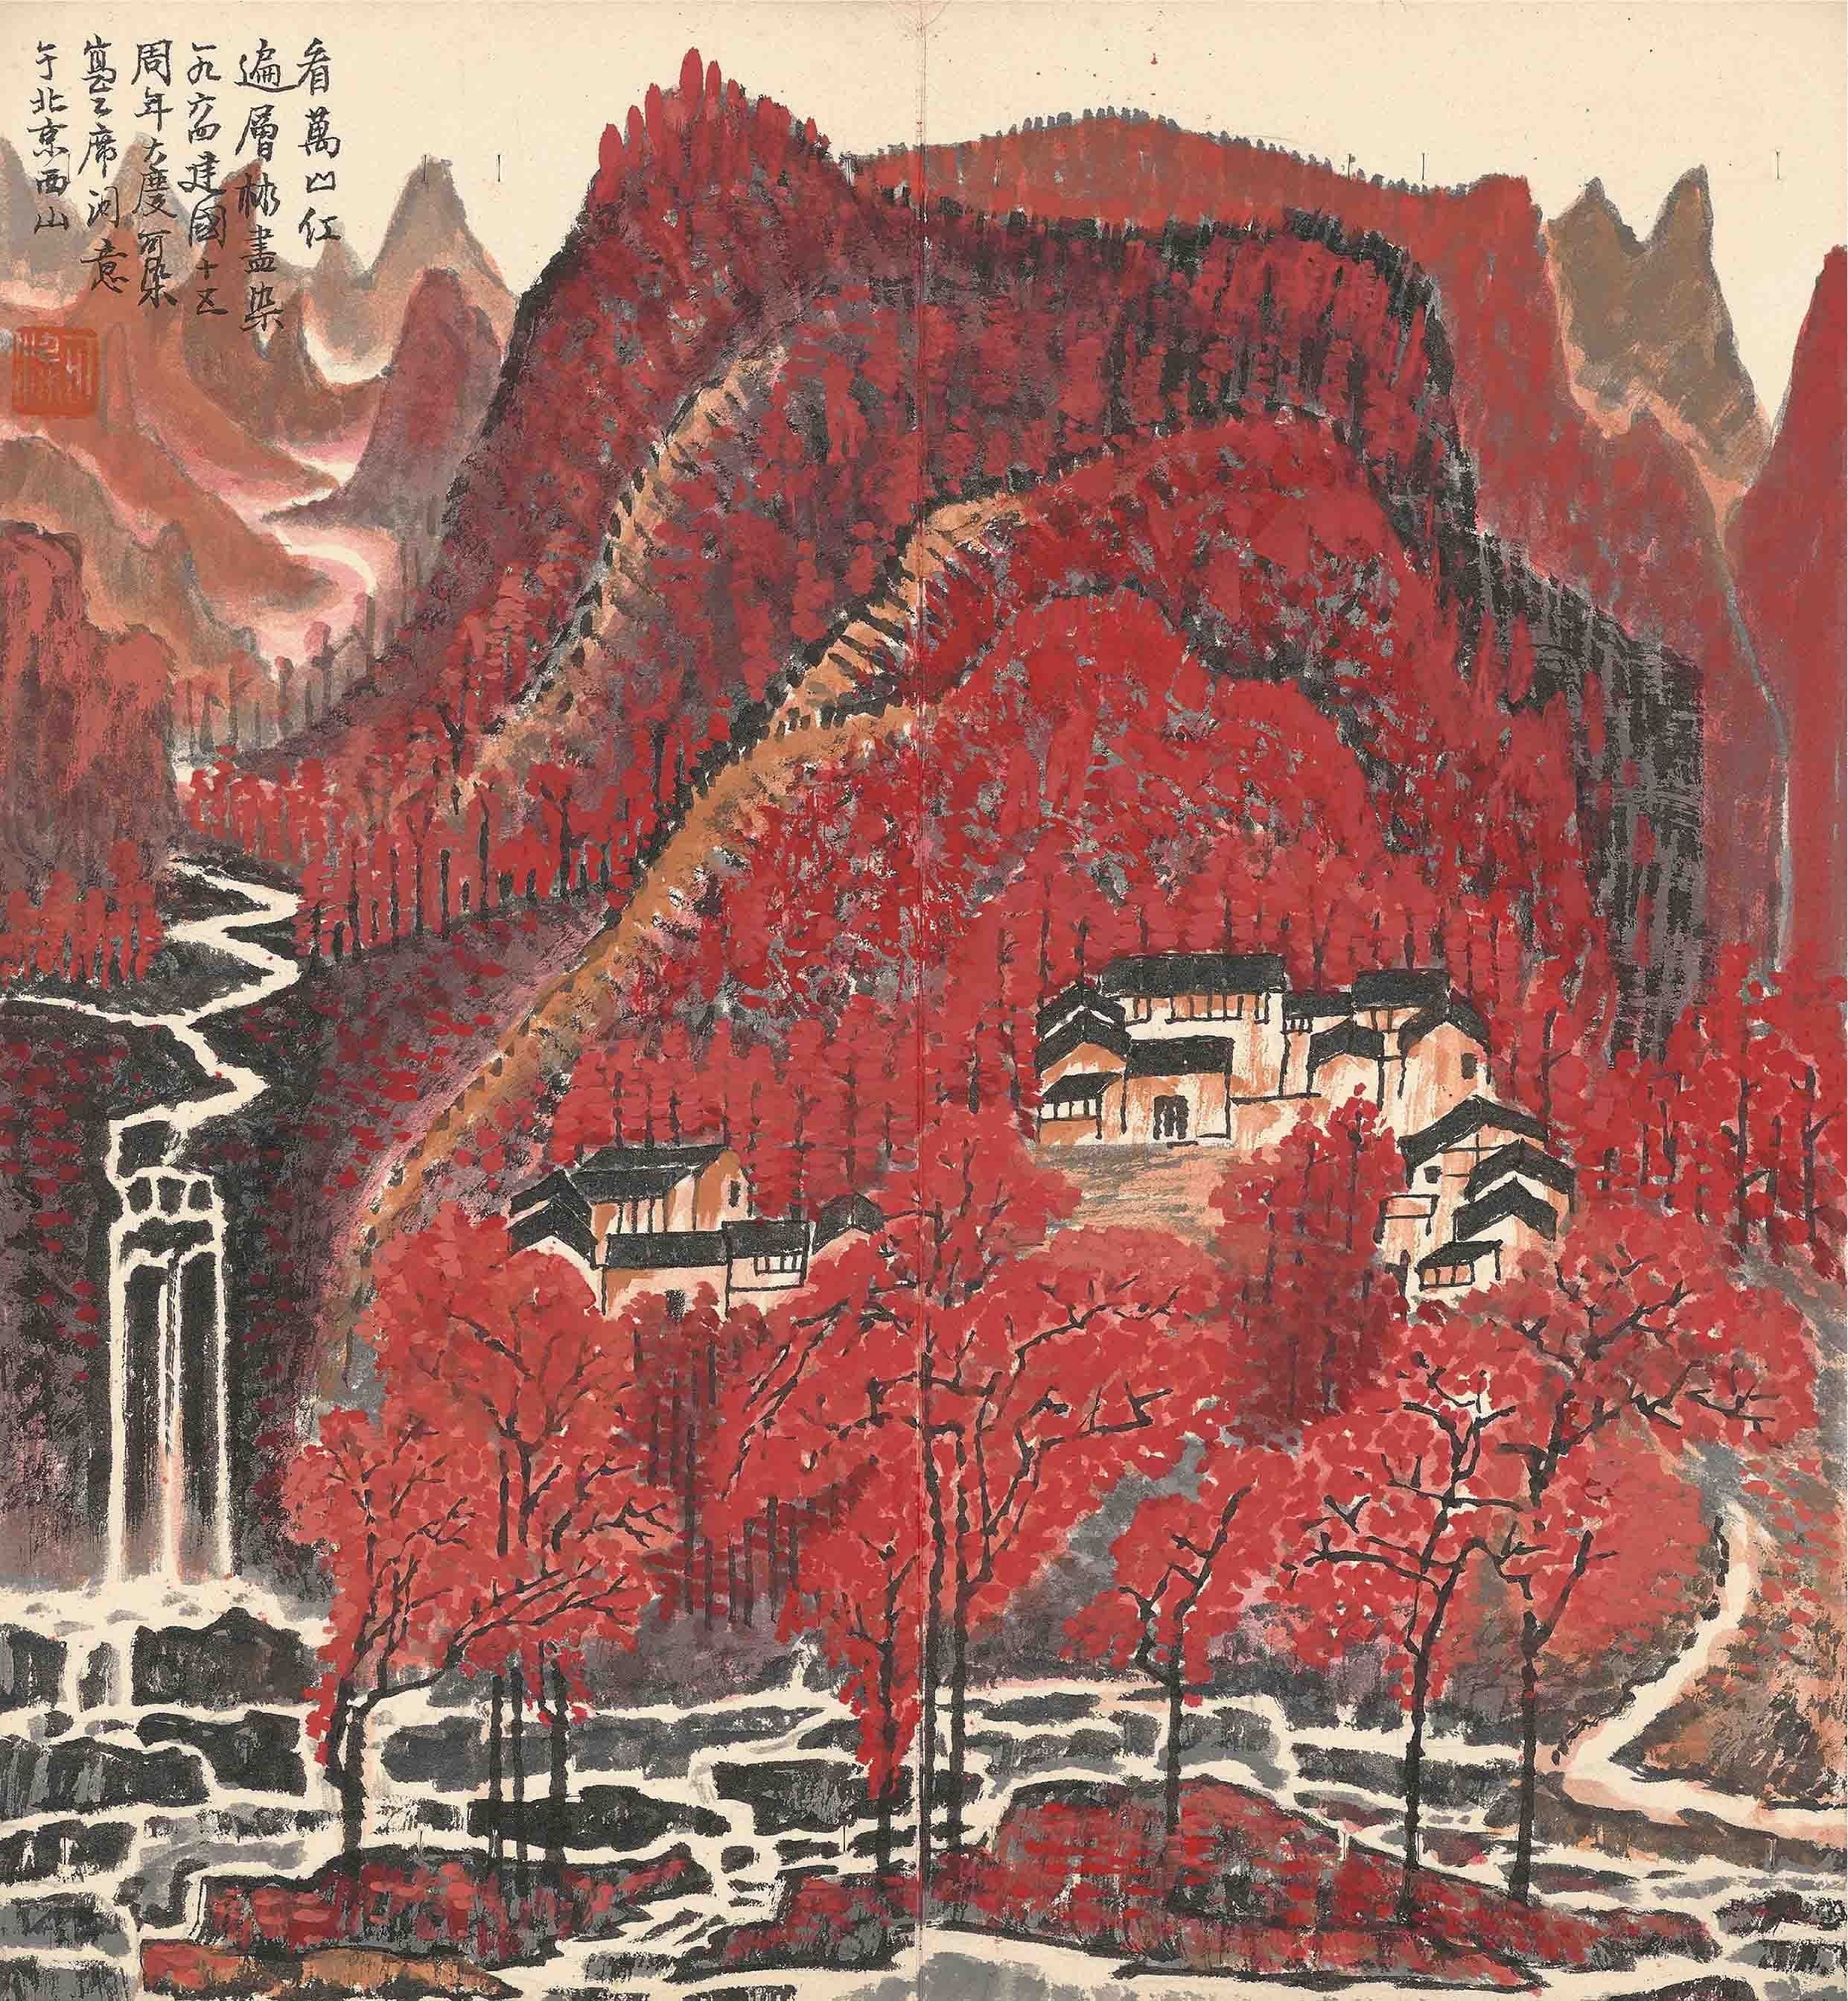 集錦冊• 萬山紅遍Precious Images • Red Leaves over the Mountains